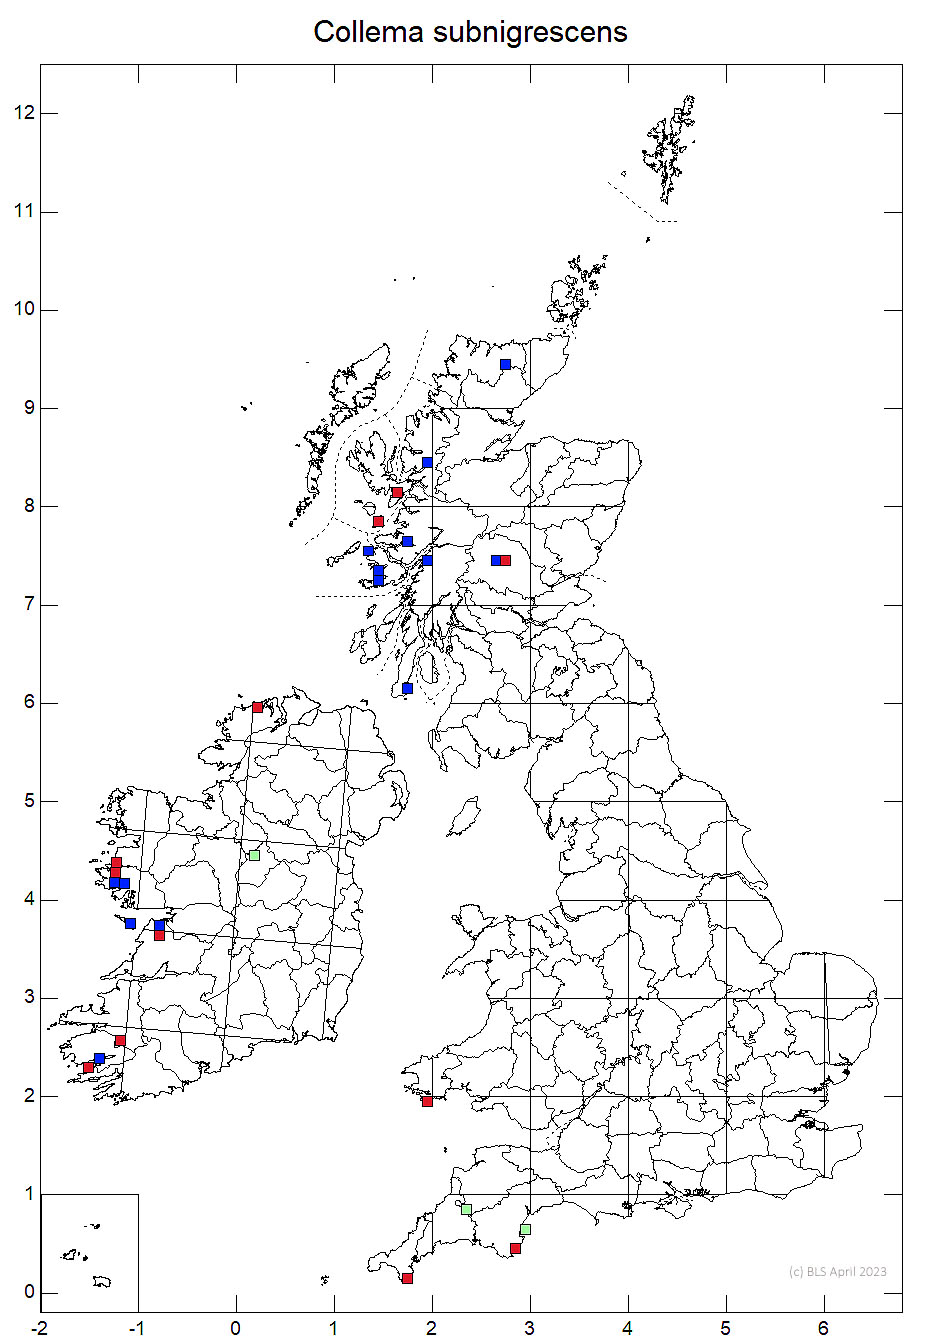 Collema subnigrescens 10km sq distribution map